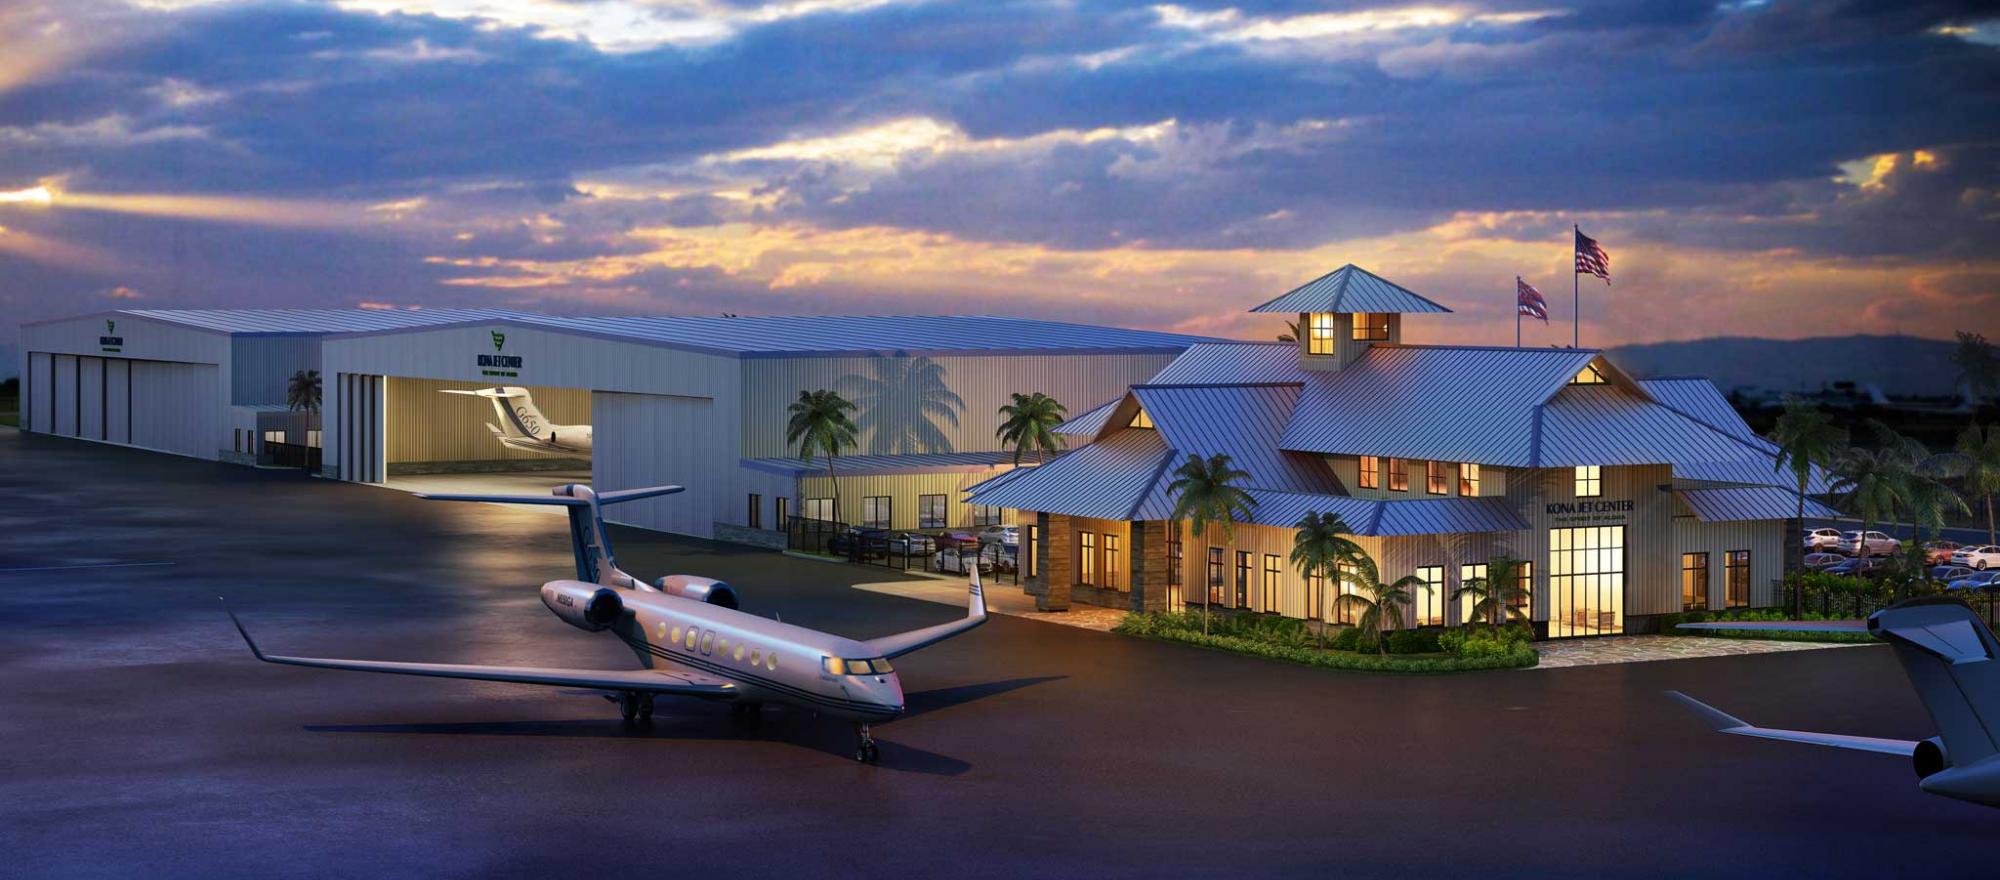 Artist rendering of the planned Kona Jet Center